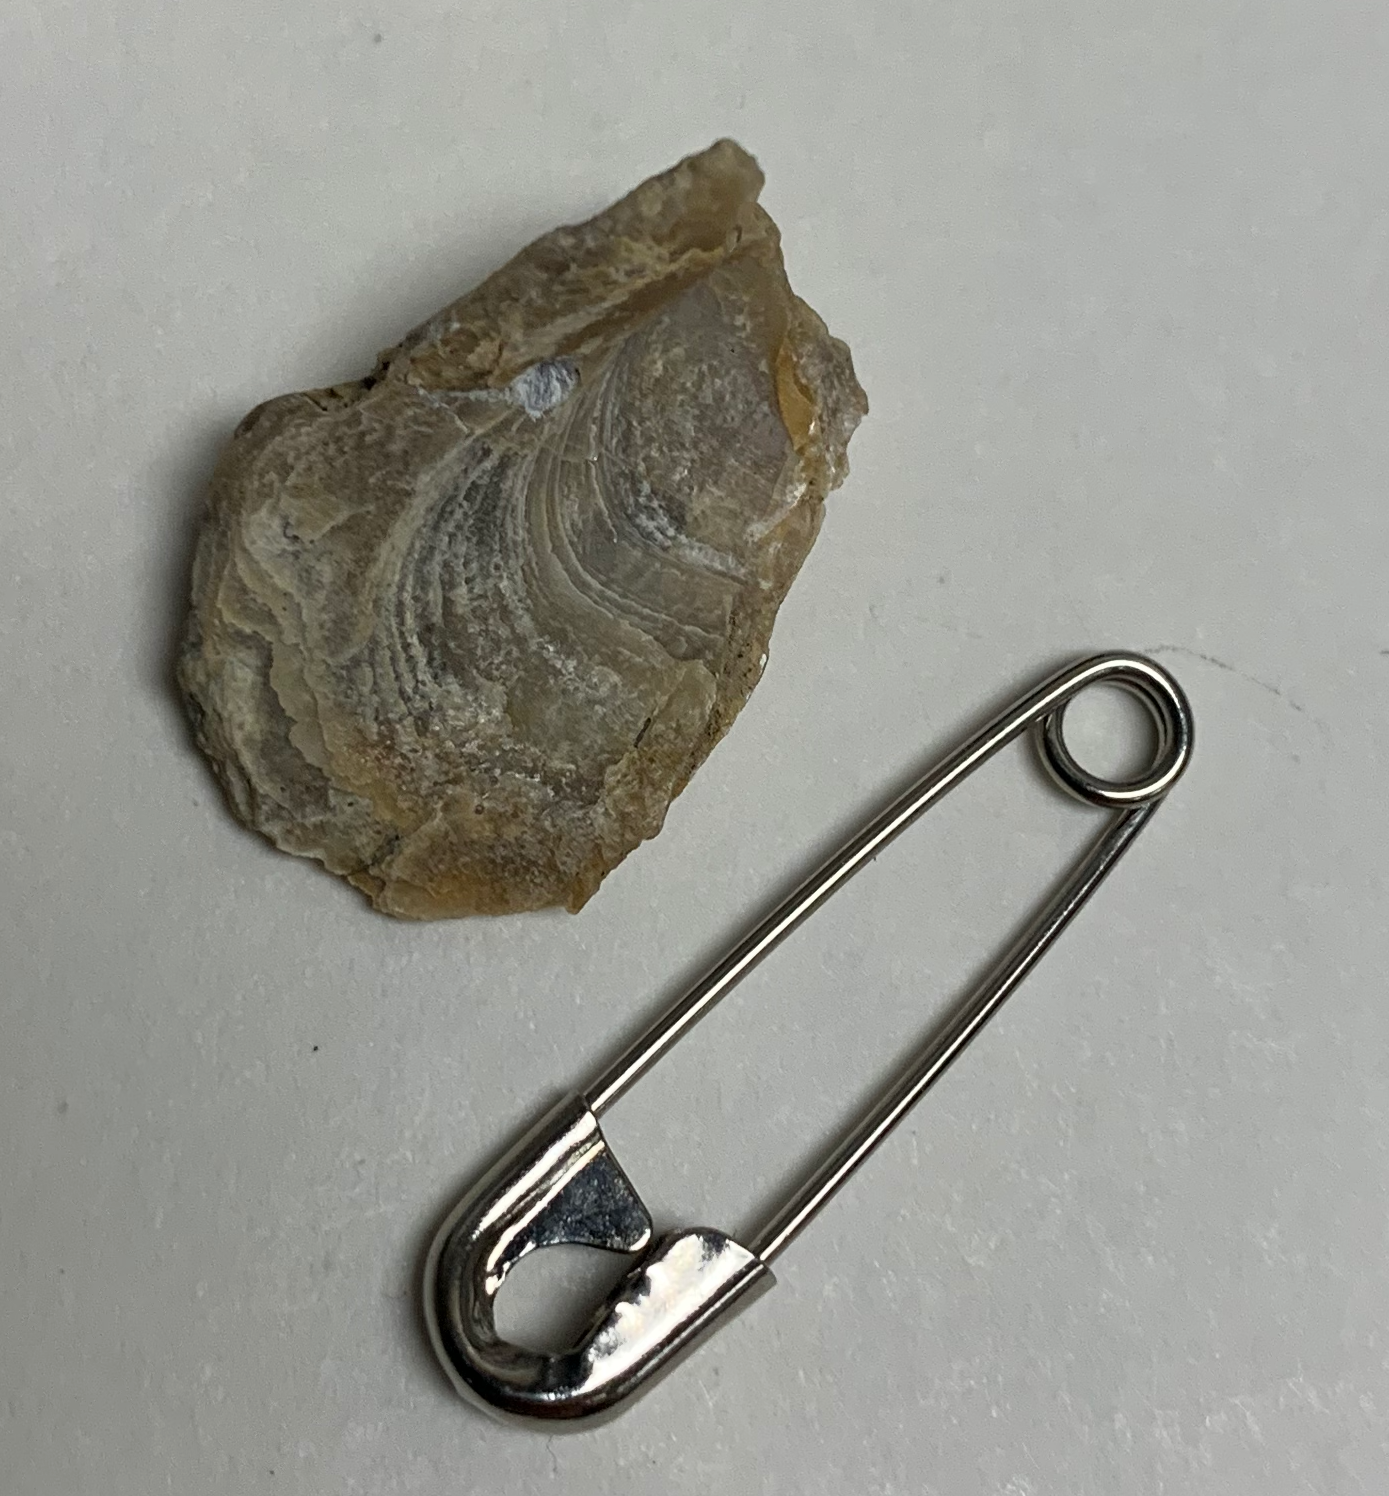 Eocene oyster shell from the Goler Fm, CA.